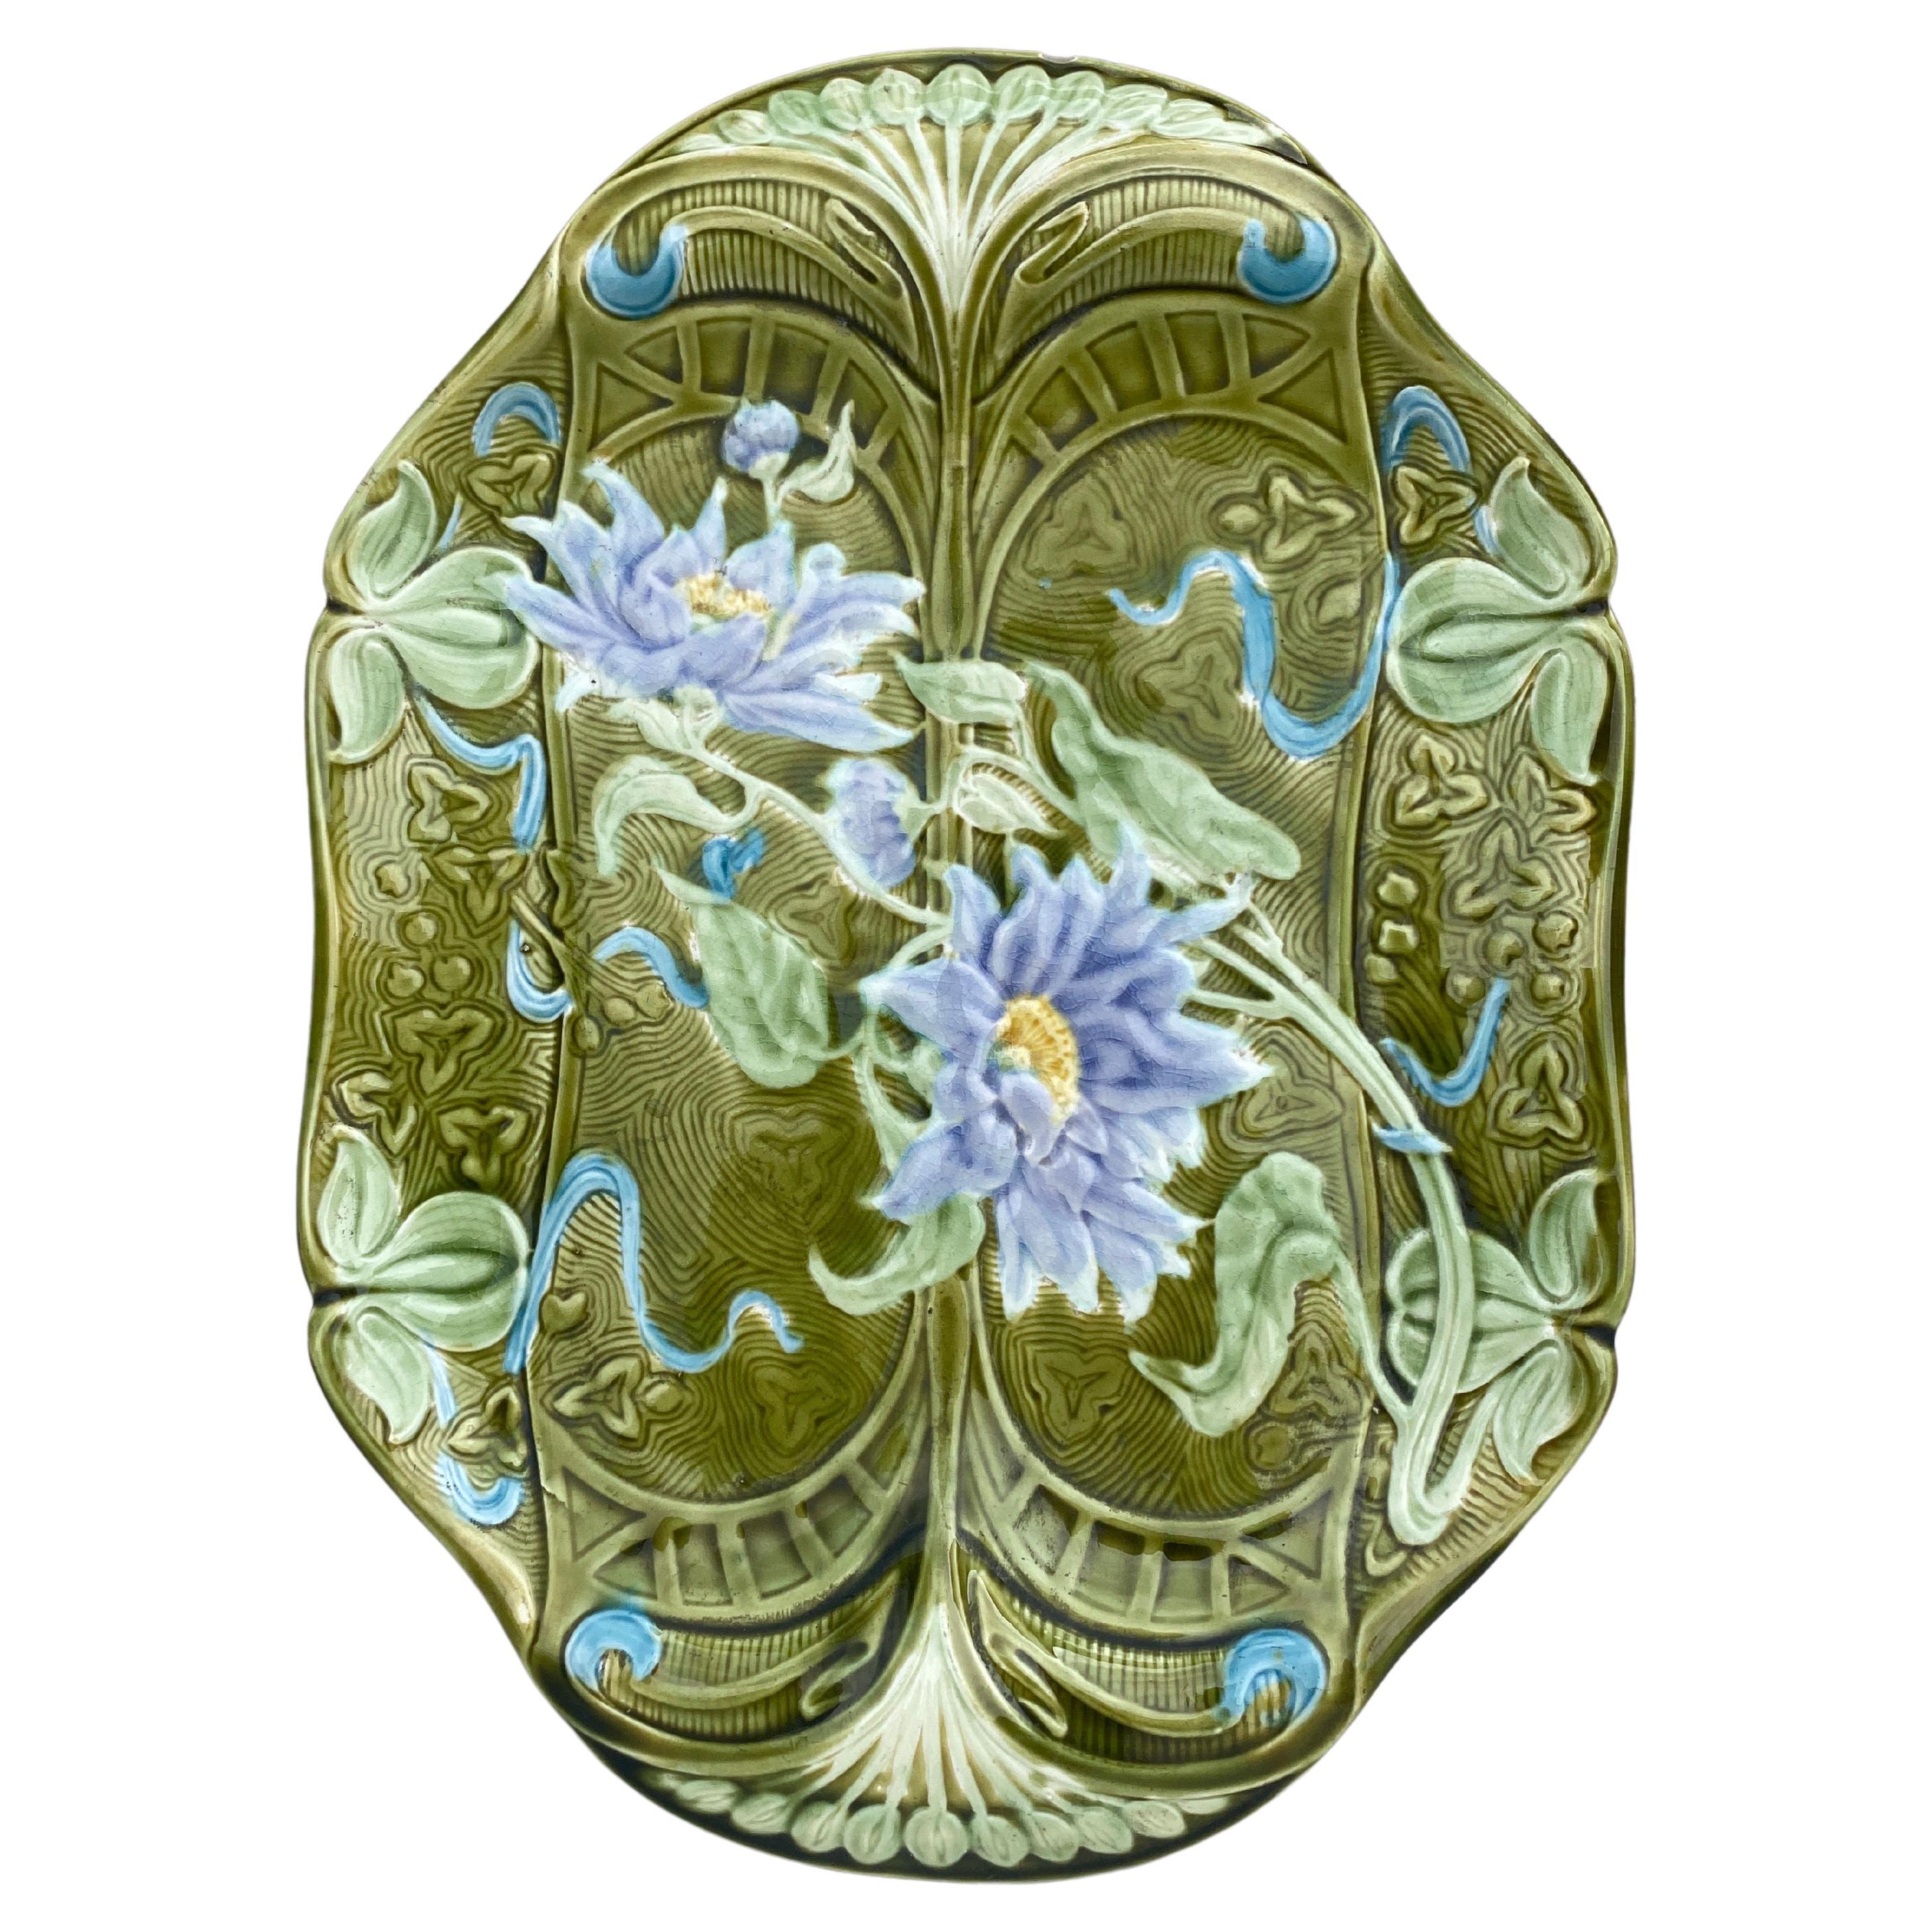 Plat à asperges en majolique de Keller et Guerin, fabricant de Saint CIRCA, vers 1900.
Décoré de chrysanthèmes violets.